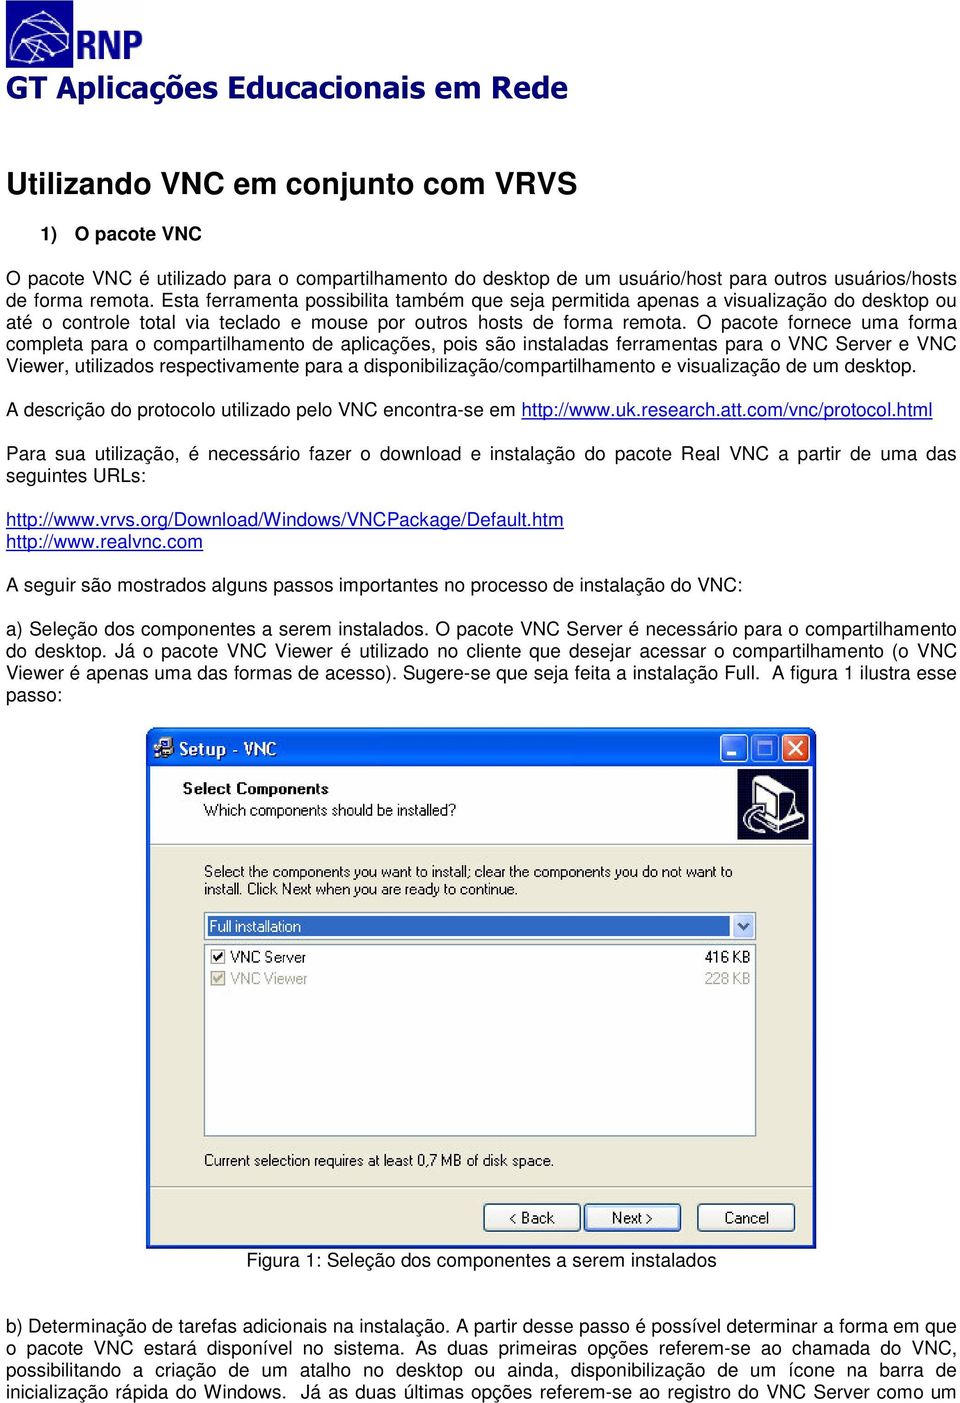 O pacote fornece uma forma completa para o compartilhamento de aplicações, pois são instaladas ferramentas para o VNC Server e VNC Viewer, utilizados respectivamente para a